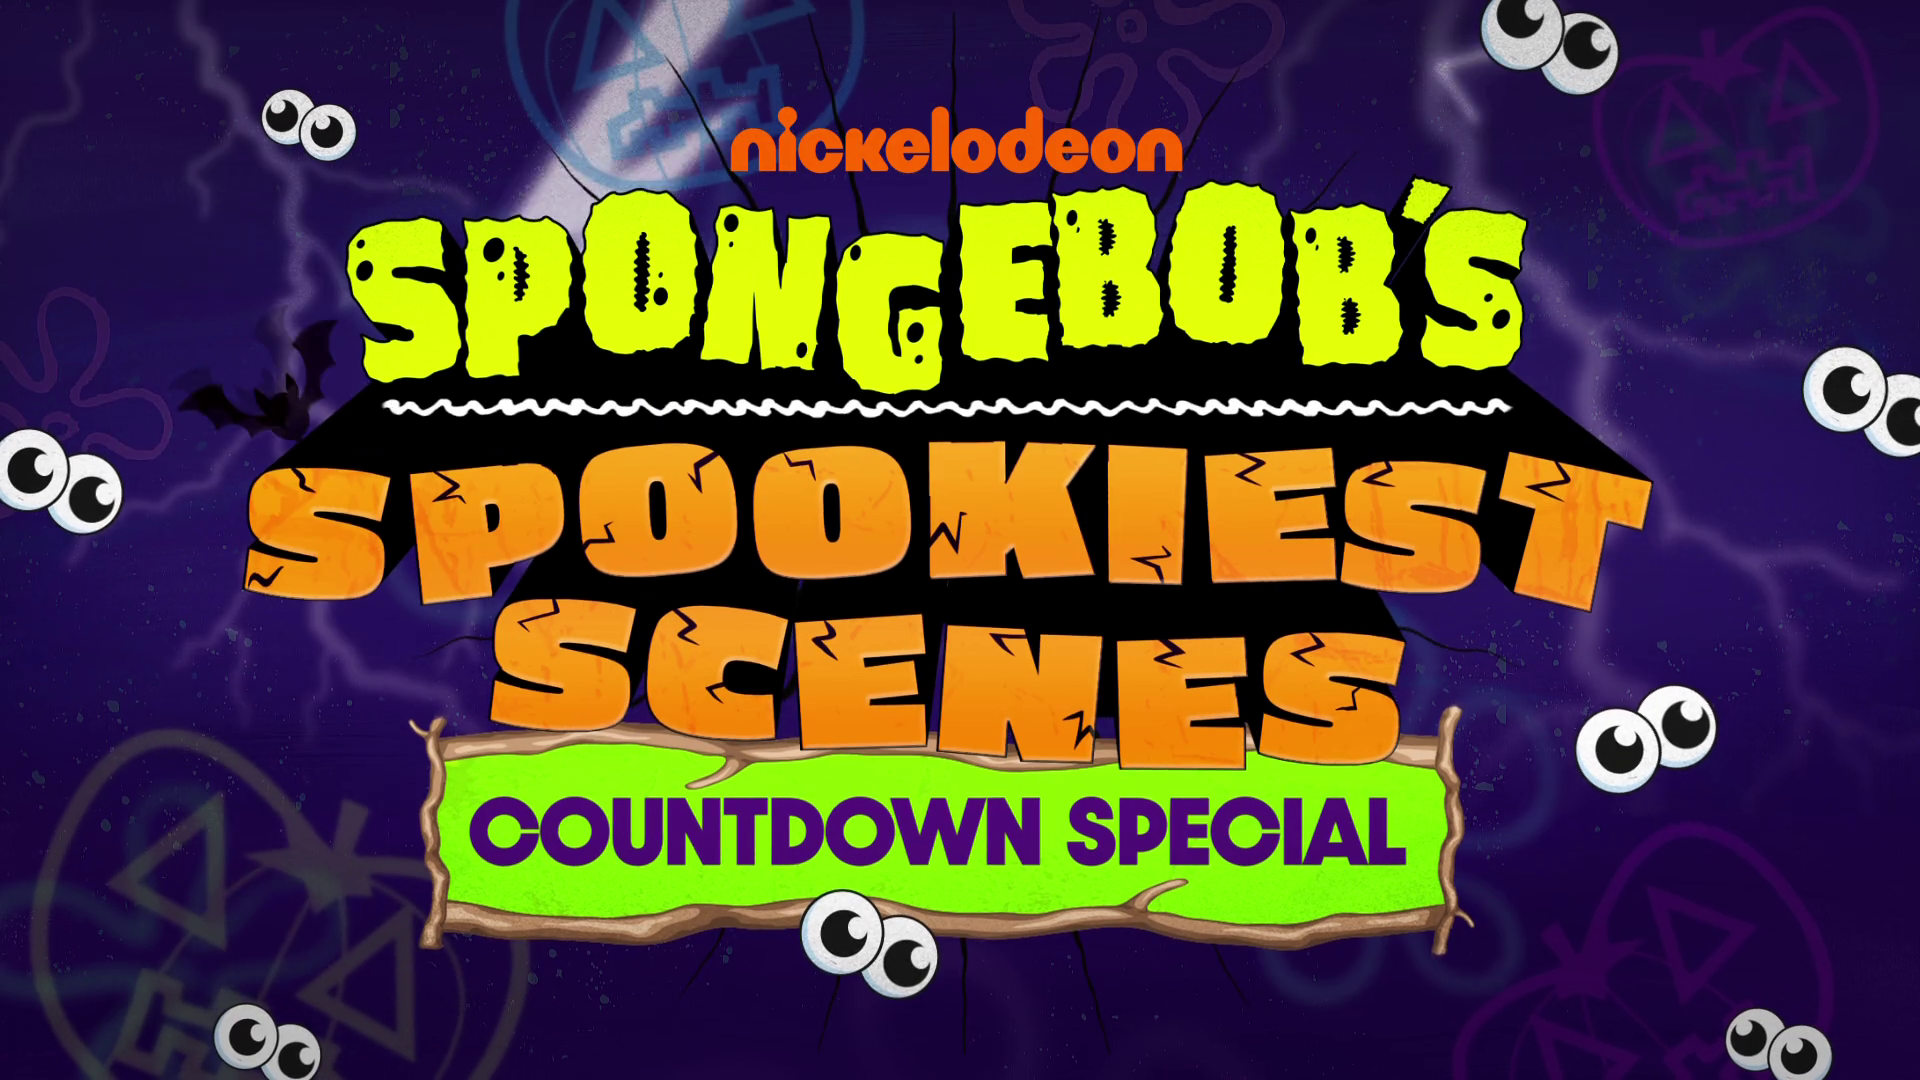 SpongeBob's Spookiest Scenes Countdown Special.